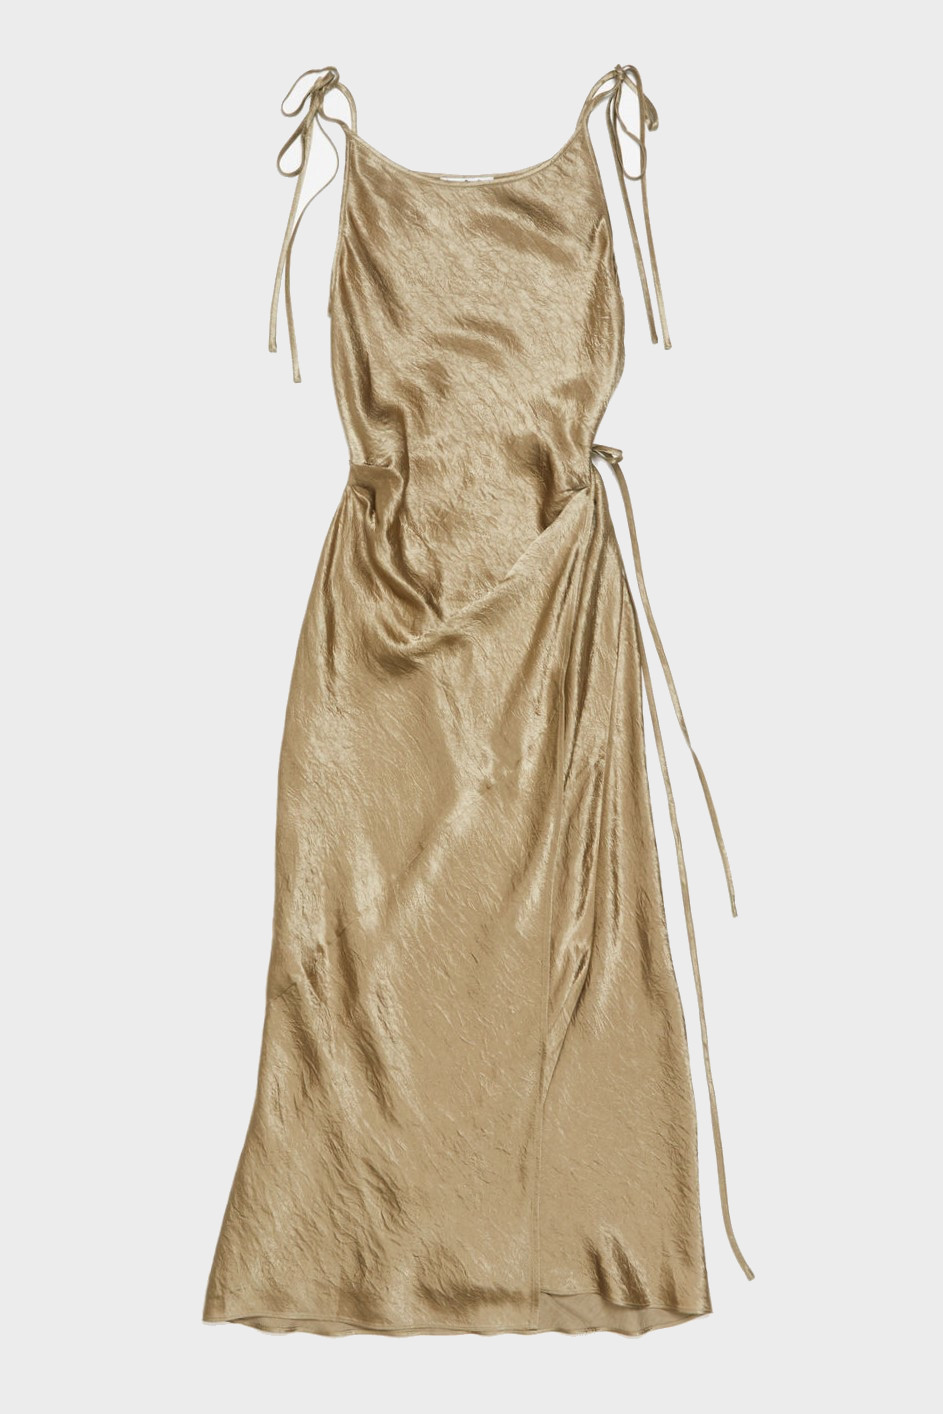 ACNE STUDIOS Tank Dress in Gold